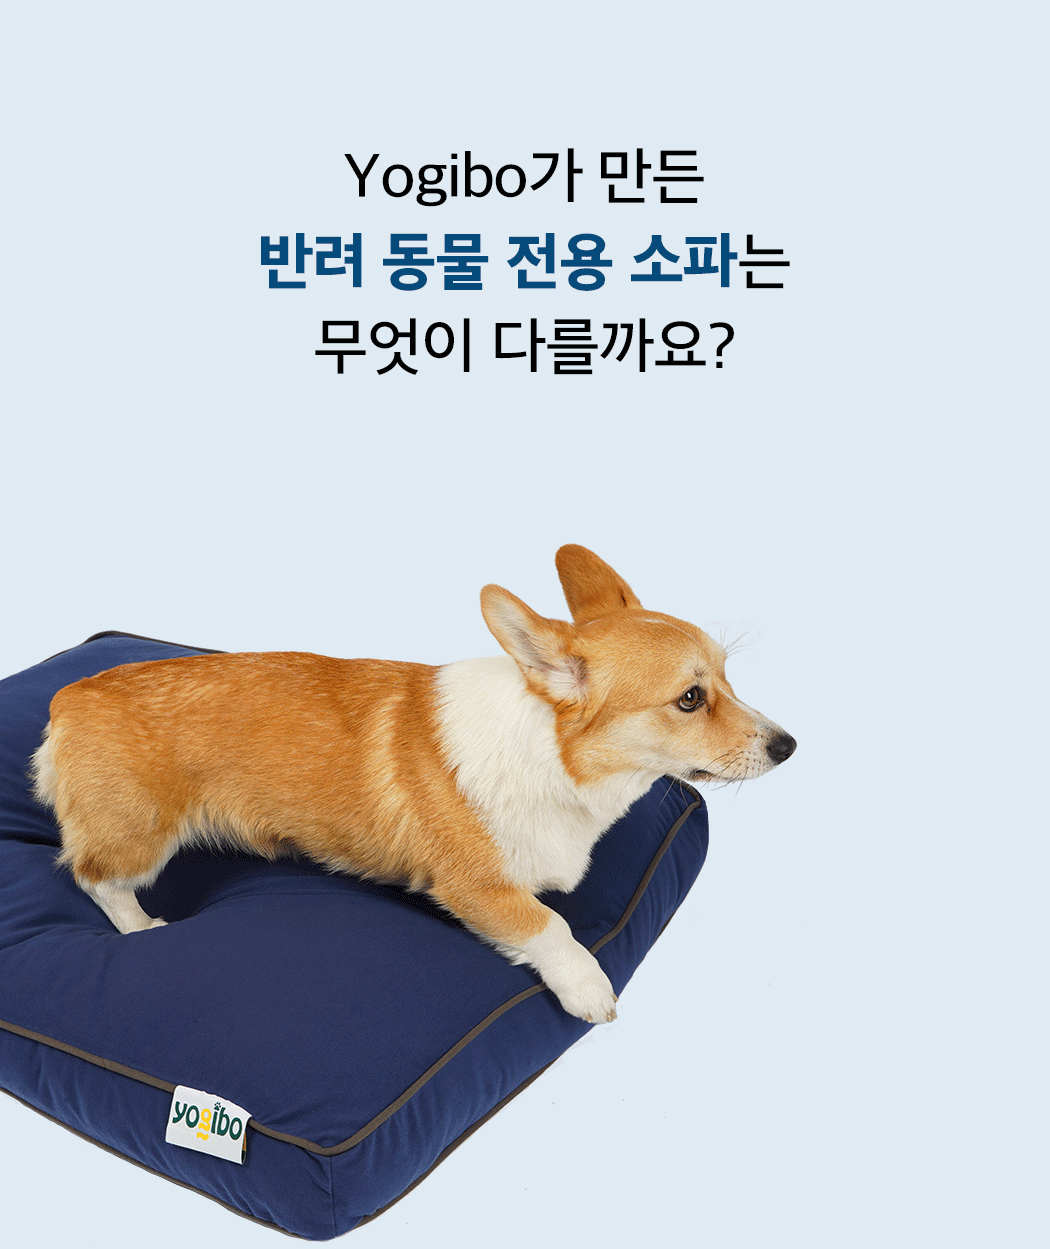 doggybo title